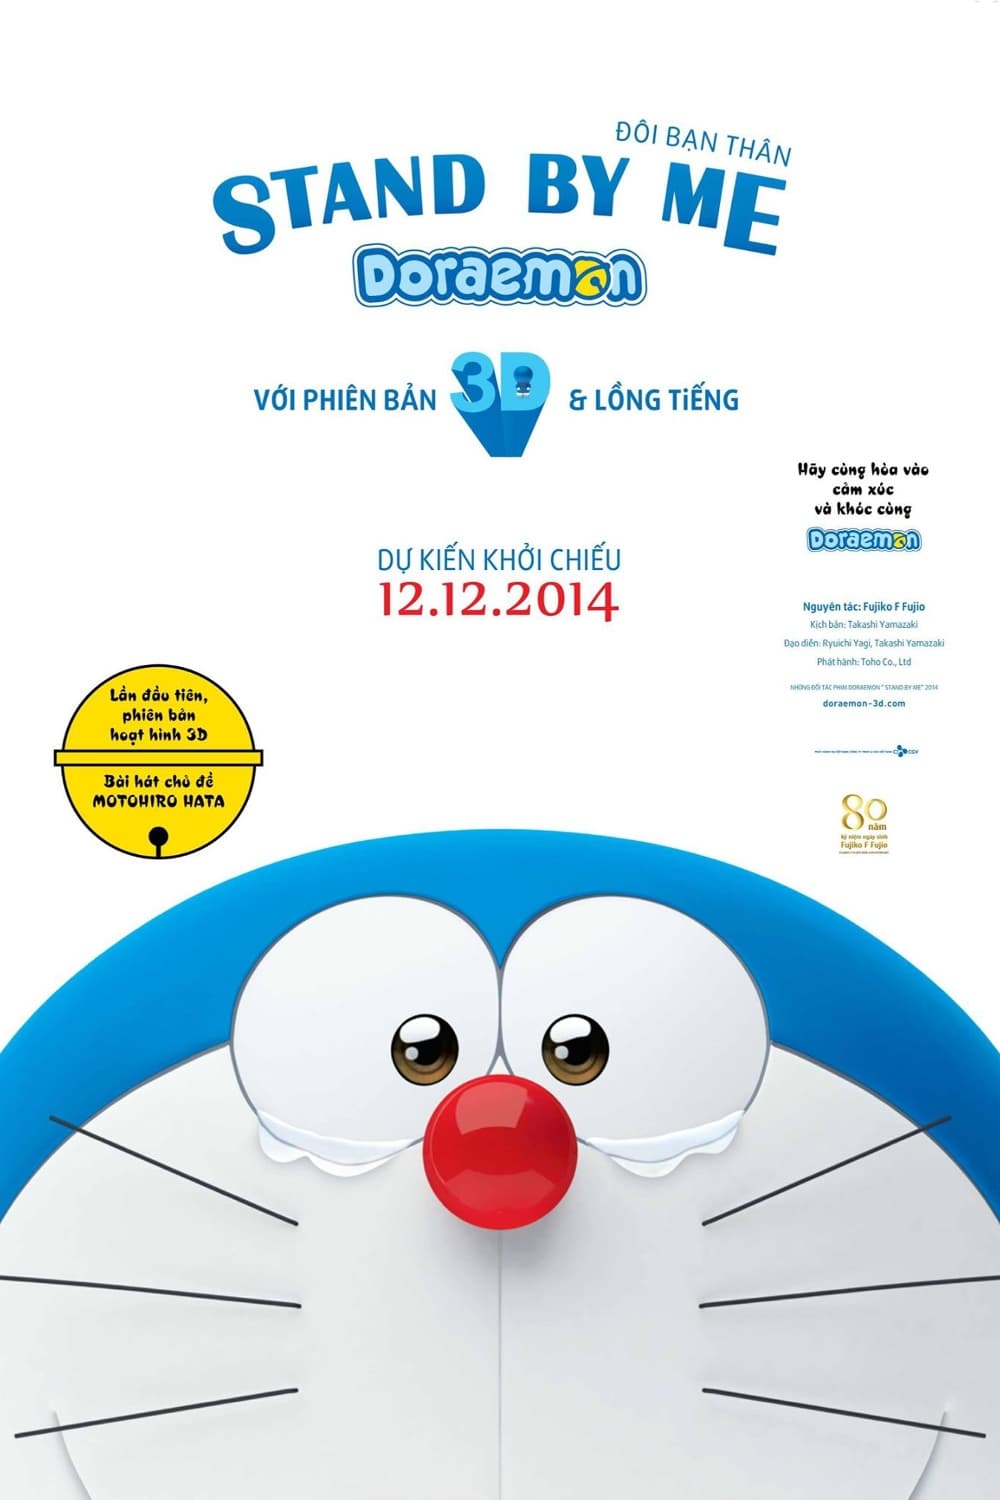 Doraemon: Đôi Bạn Thân (Stand by Me Doraemon) [2014]